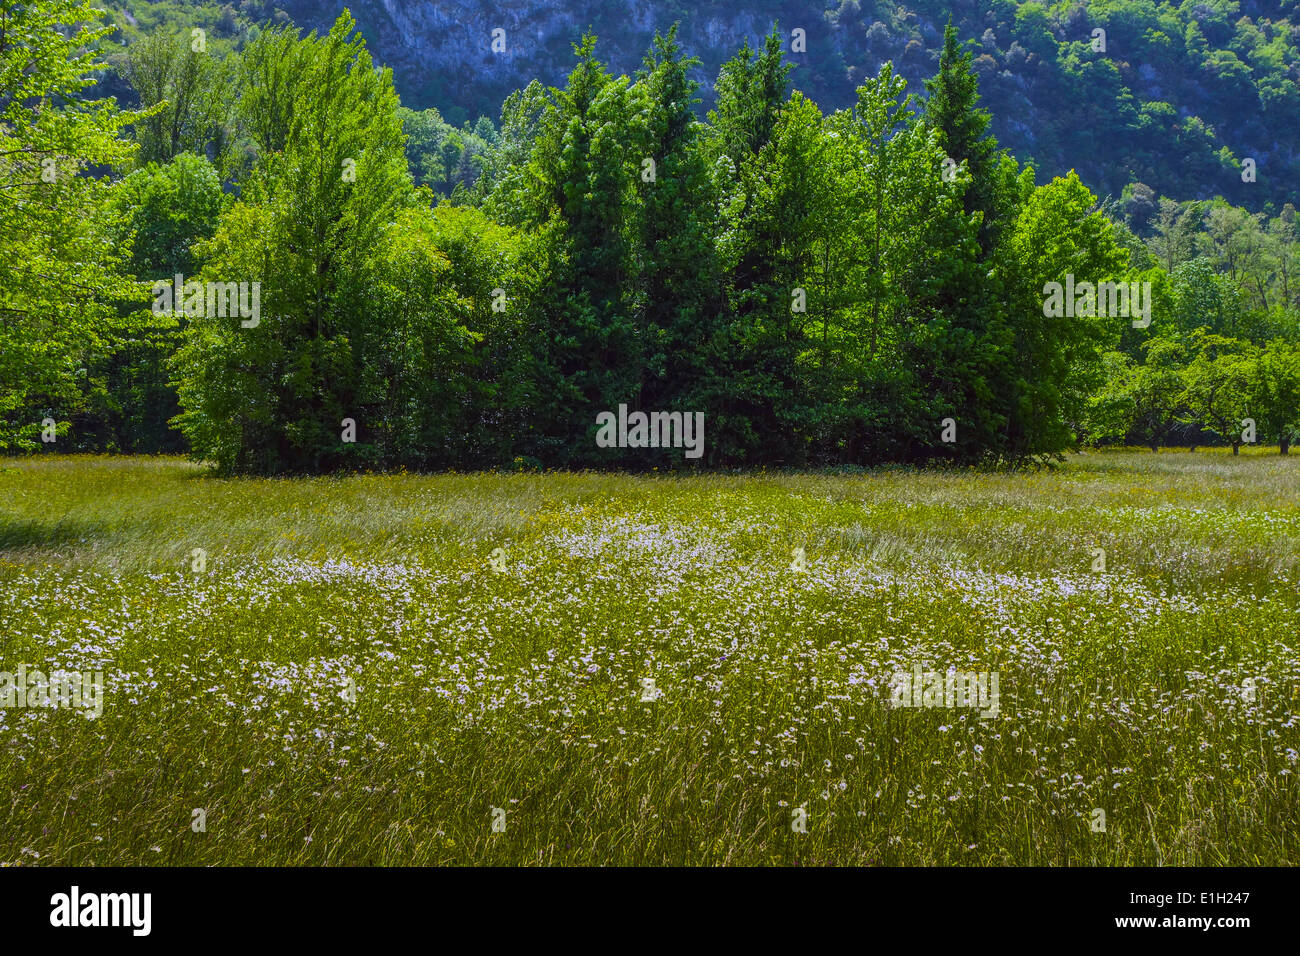 Heno de pasto de verano prado con árboles verdes distantes Foto de stock